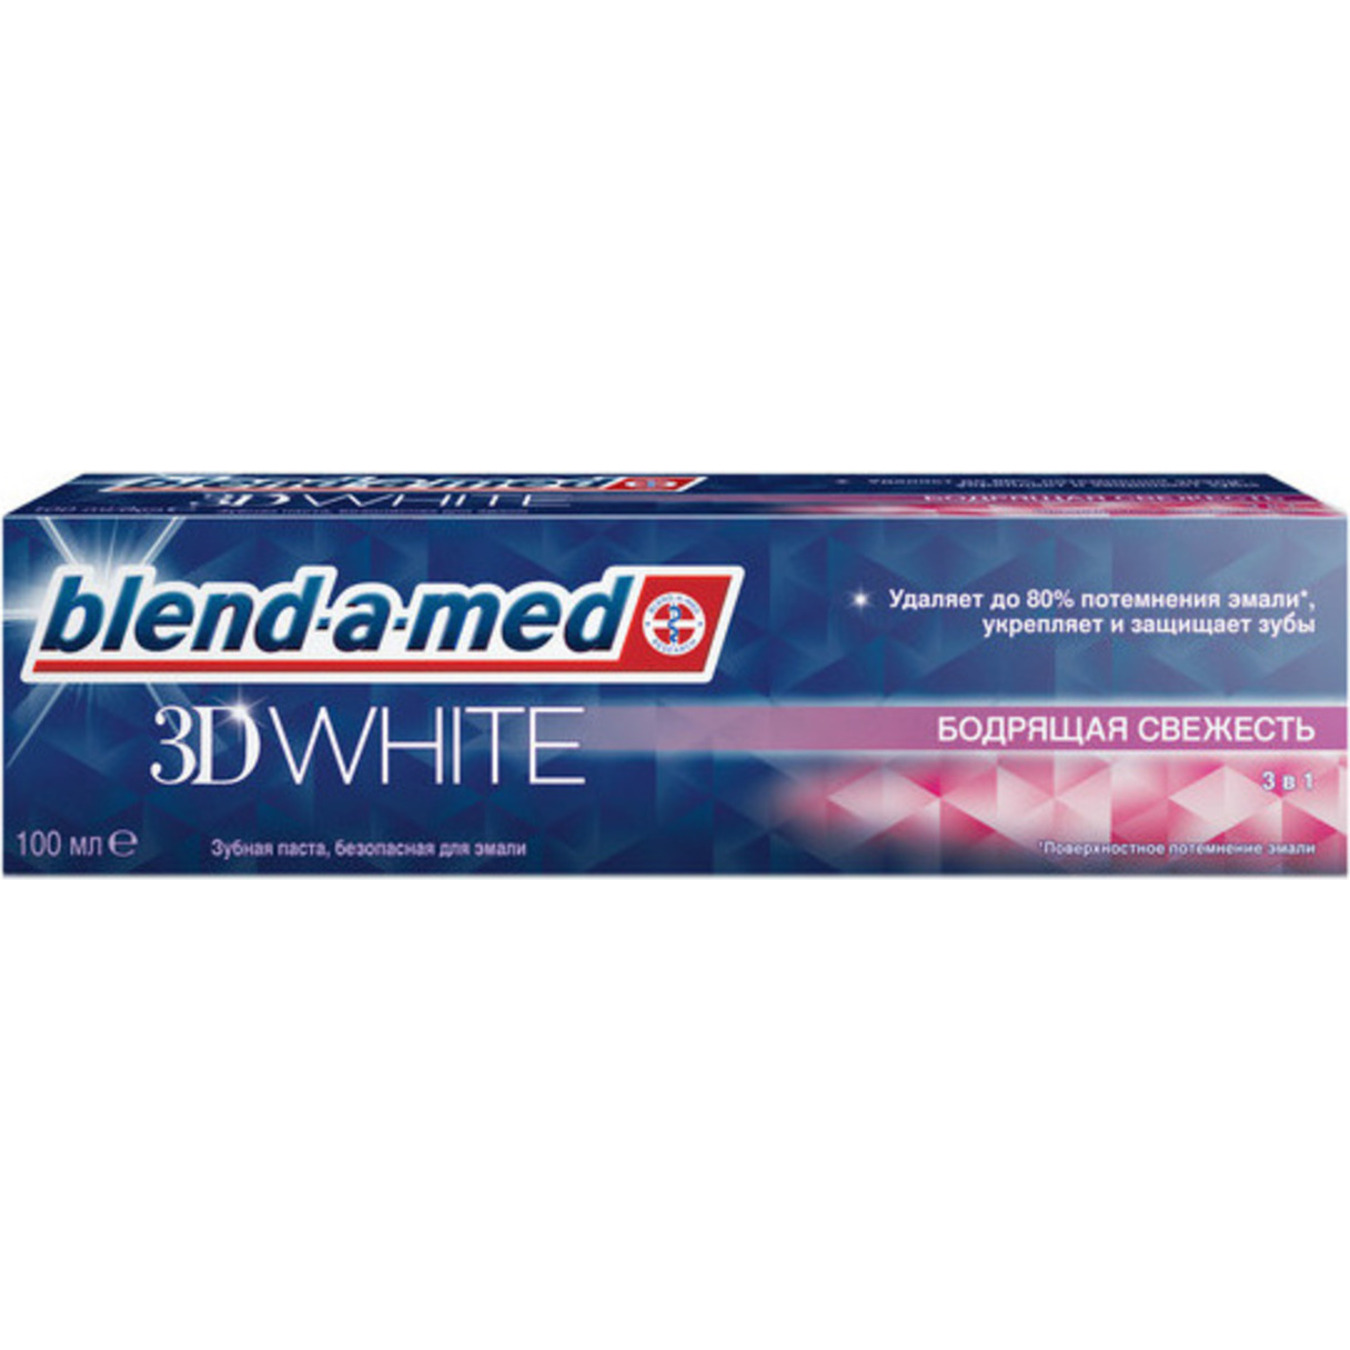 Blend-a-med 3D White Invigorating Freshness Toothpaste 100ml